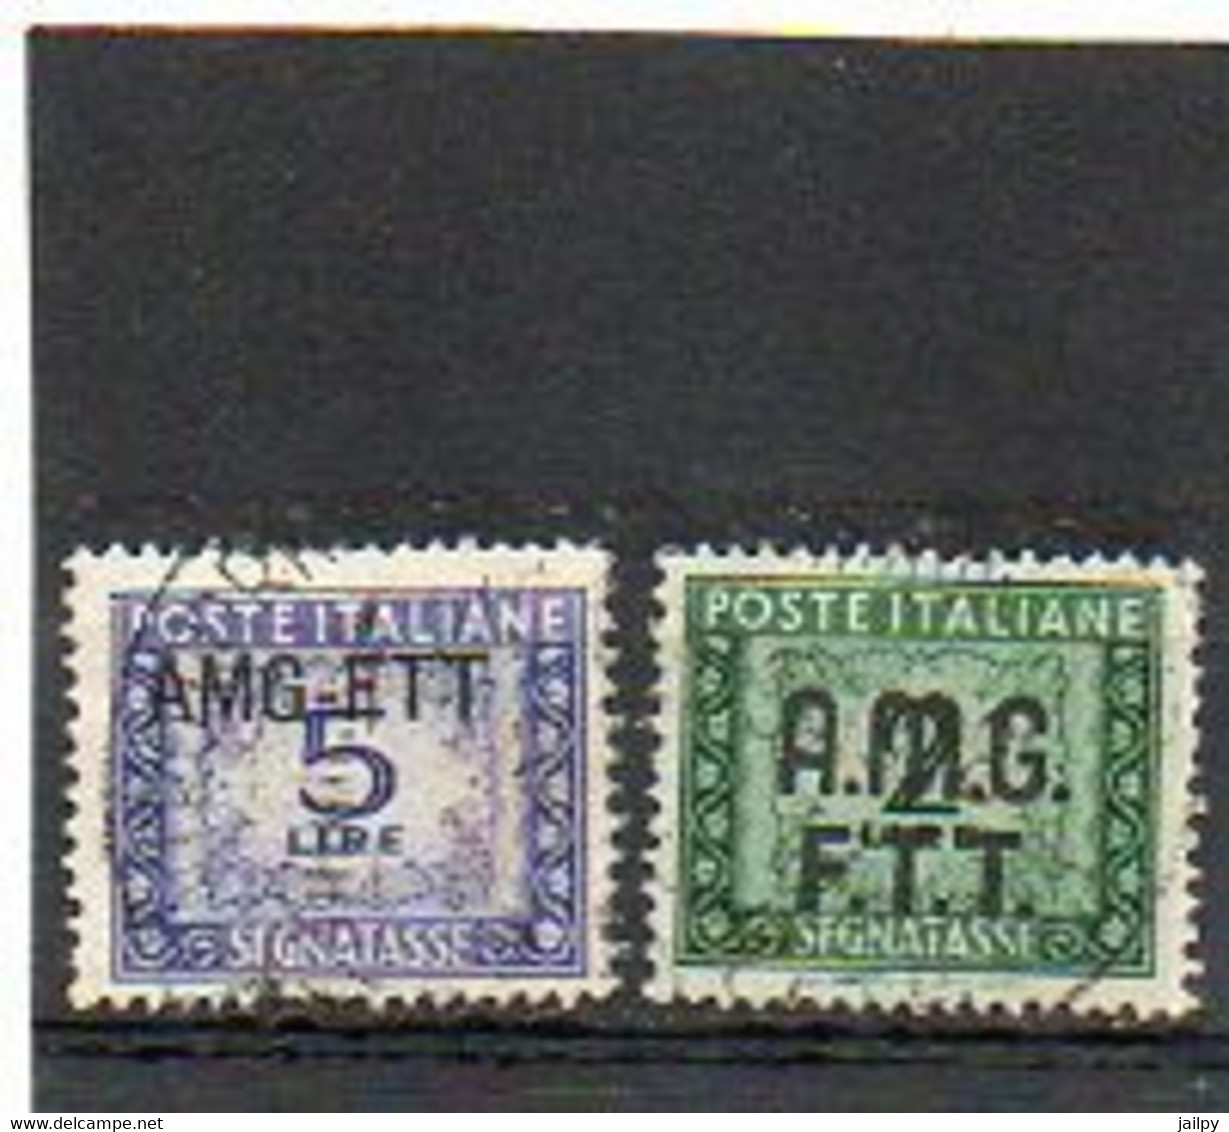 ITALIE   TRIESTE   AMG FTT    2 Timbres Taxe    2 Et 5  Lire   1947   Oblitérés - Segnatasse